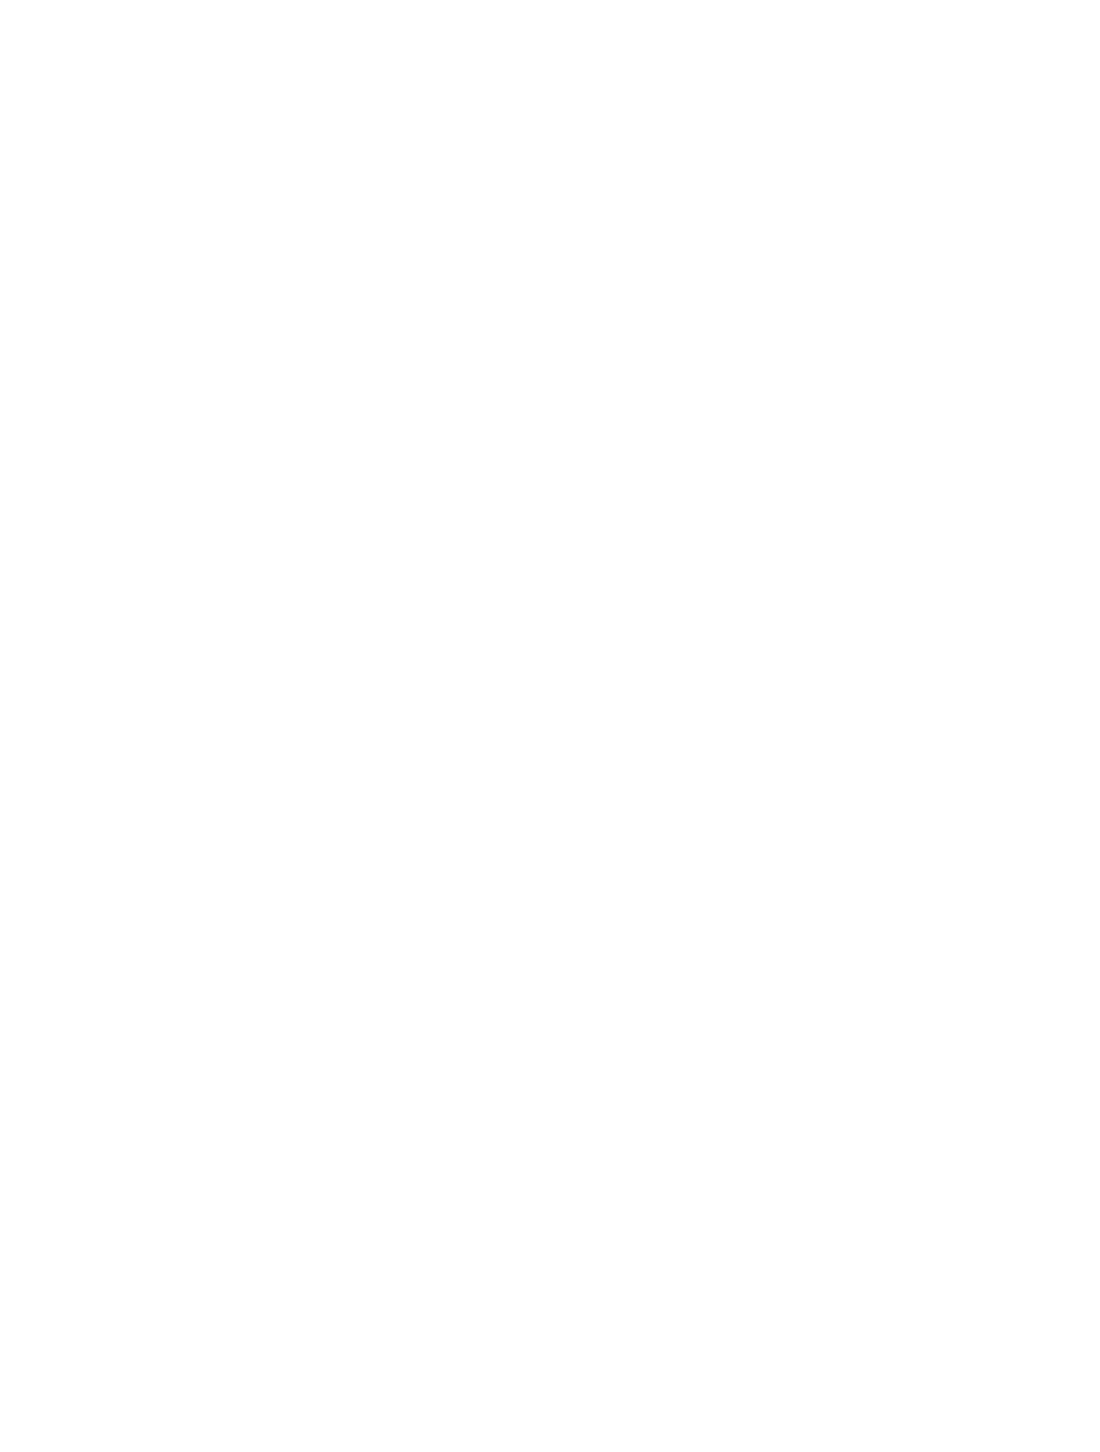 Coldwell Banker | Flanagan Realty